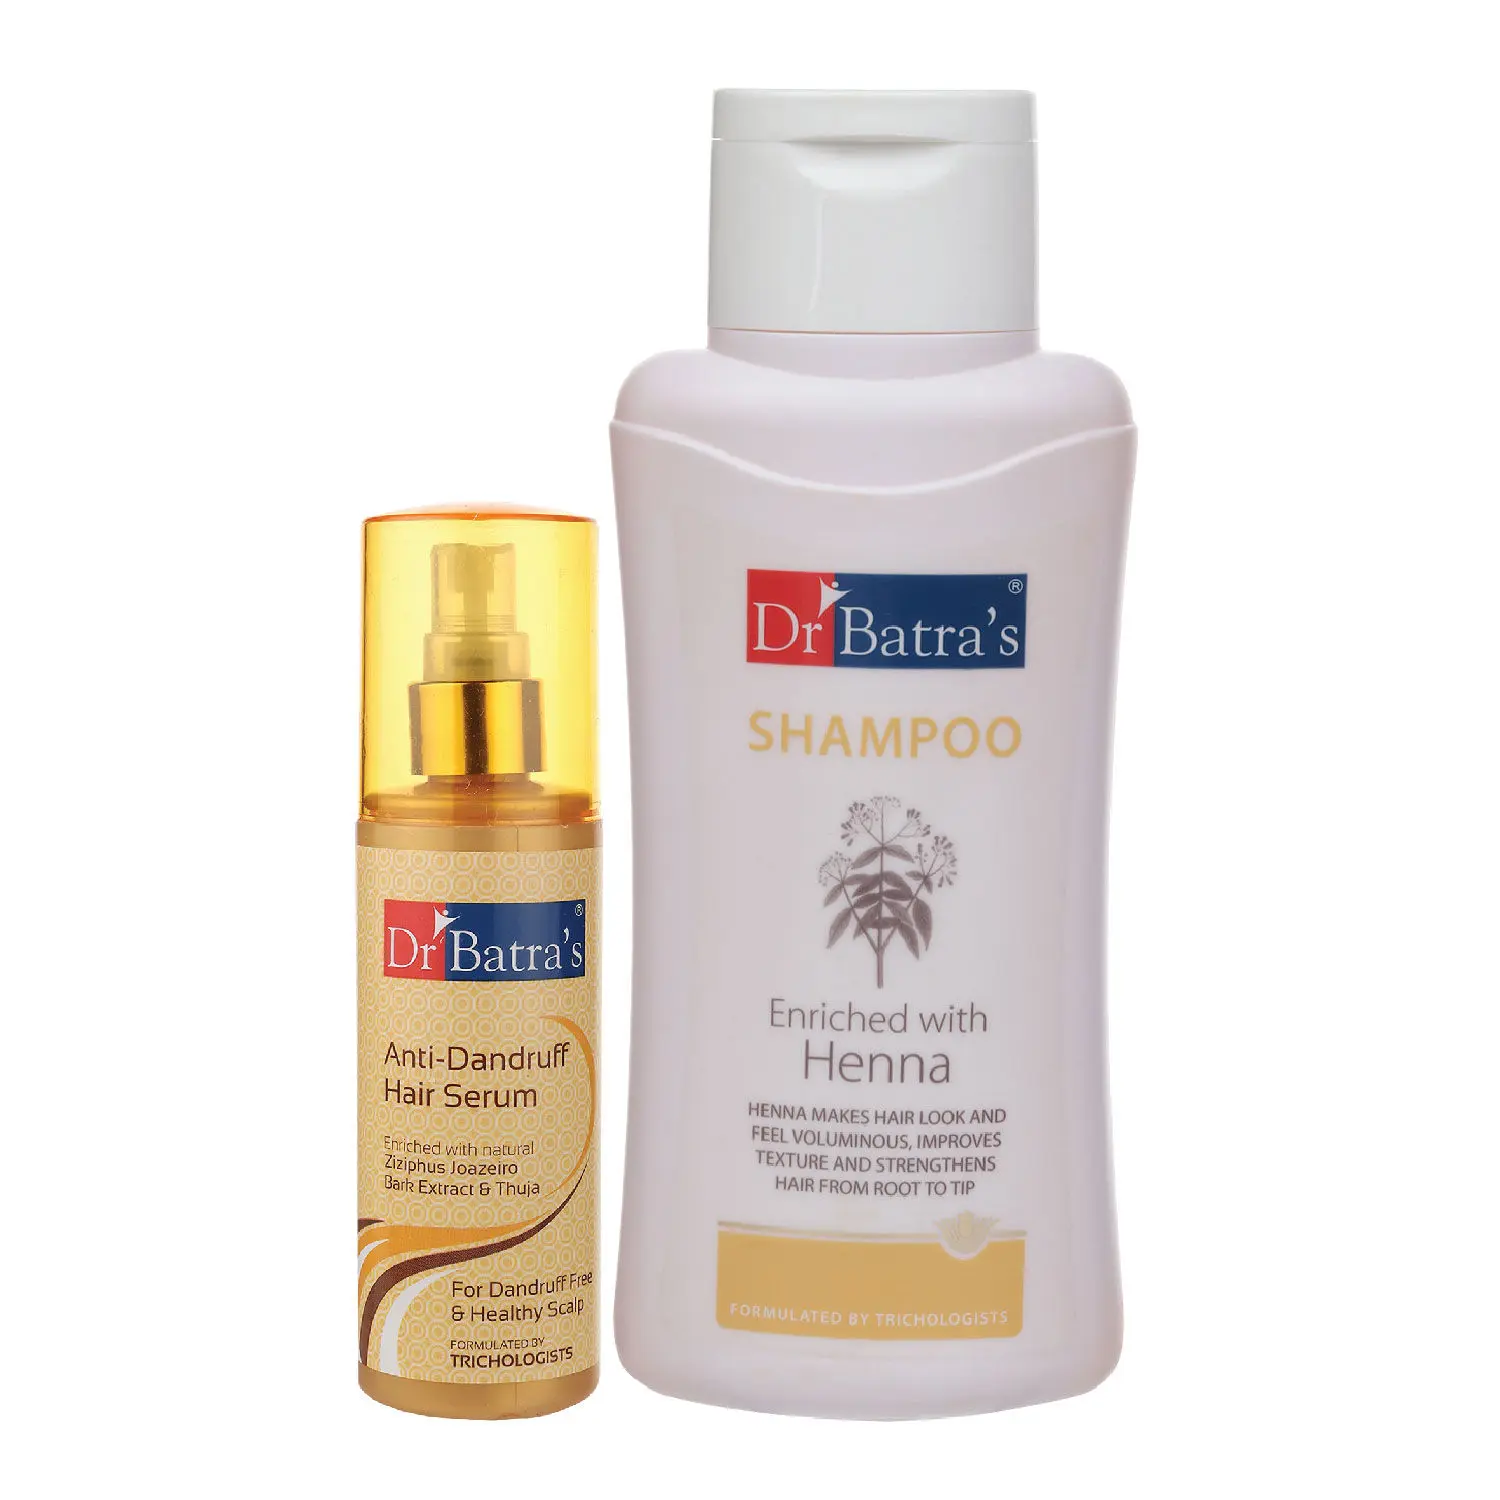 Dr Batra's Anti Dandruff Hair Serum and Normal Shampoo - 500 ml